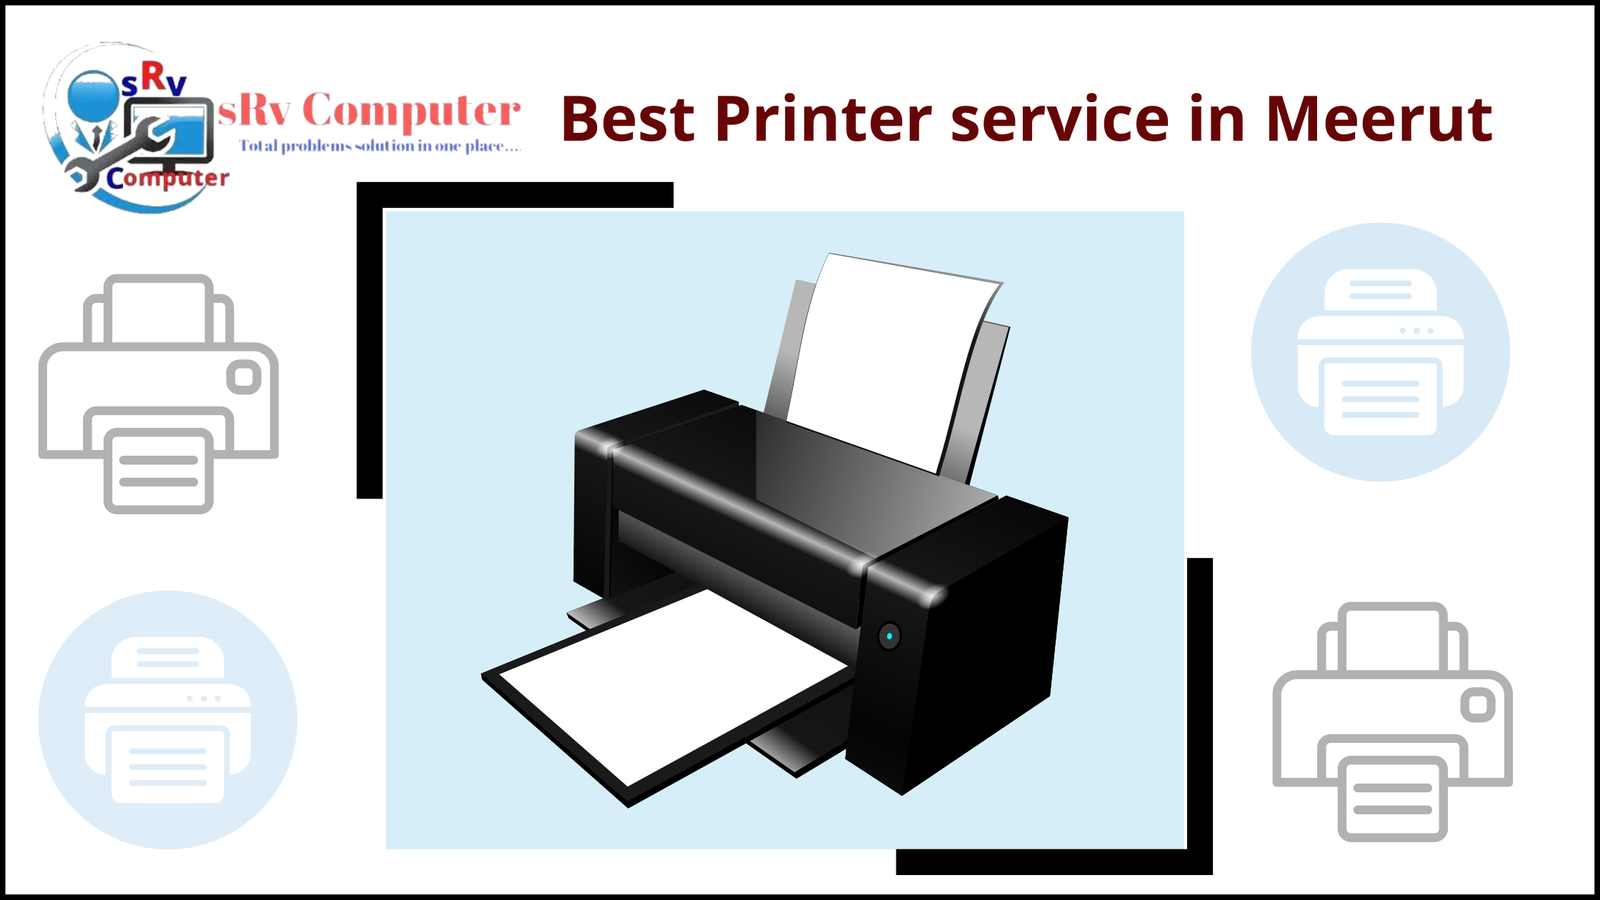 Best Printer service in Meerut